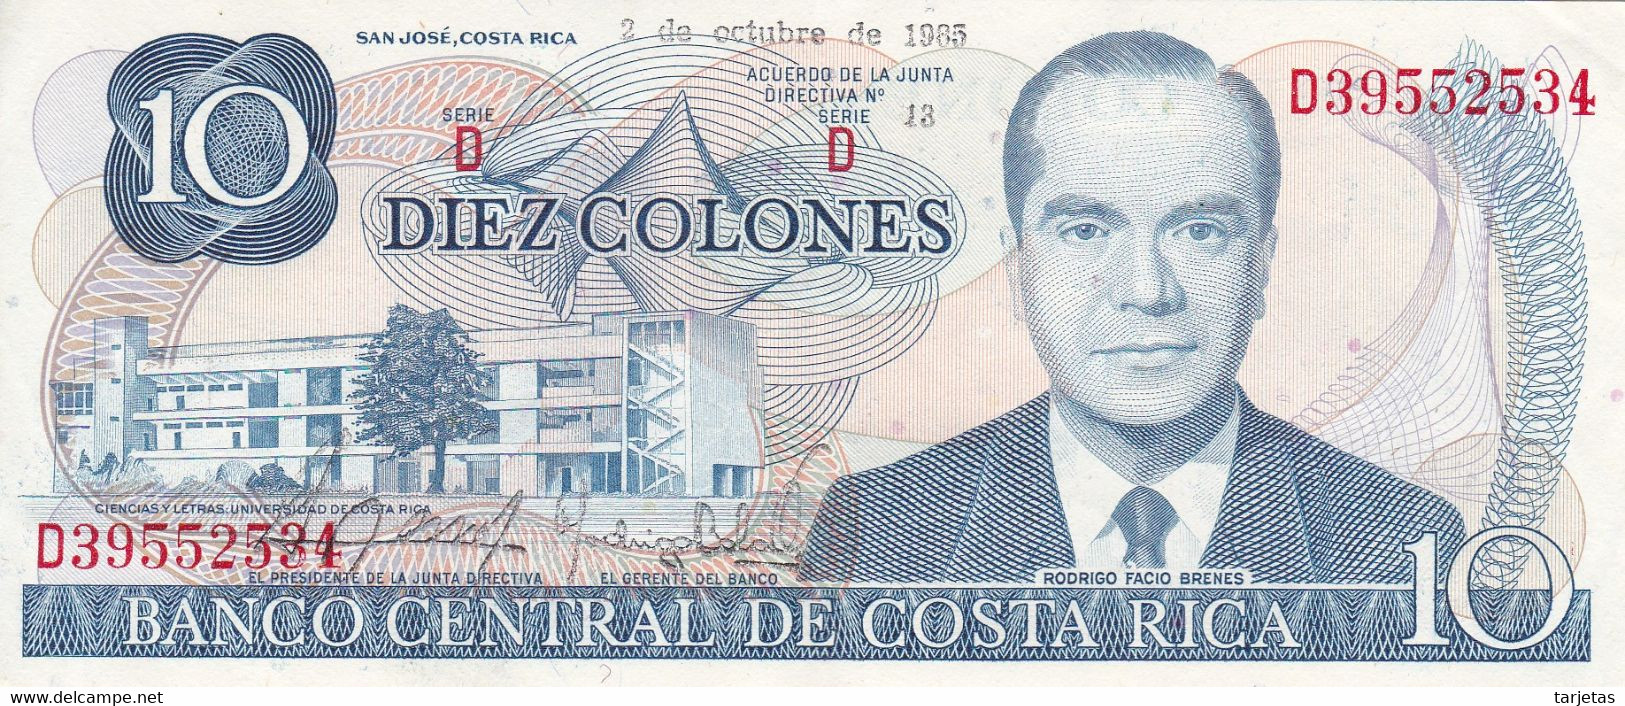 BILLETE DE COSTA RICA DE 10 COLONES DEL AÑO 1985 EN CALIDAD EBC (XF) (BANKNOTE) - Costa Rica